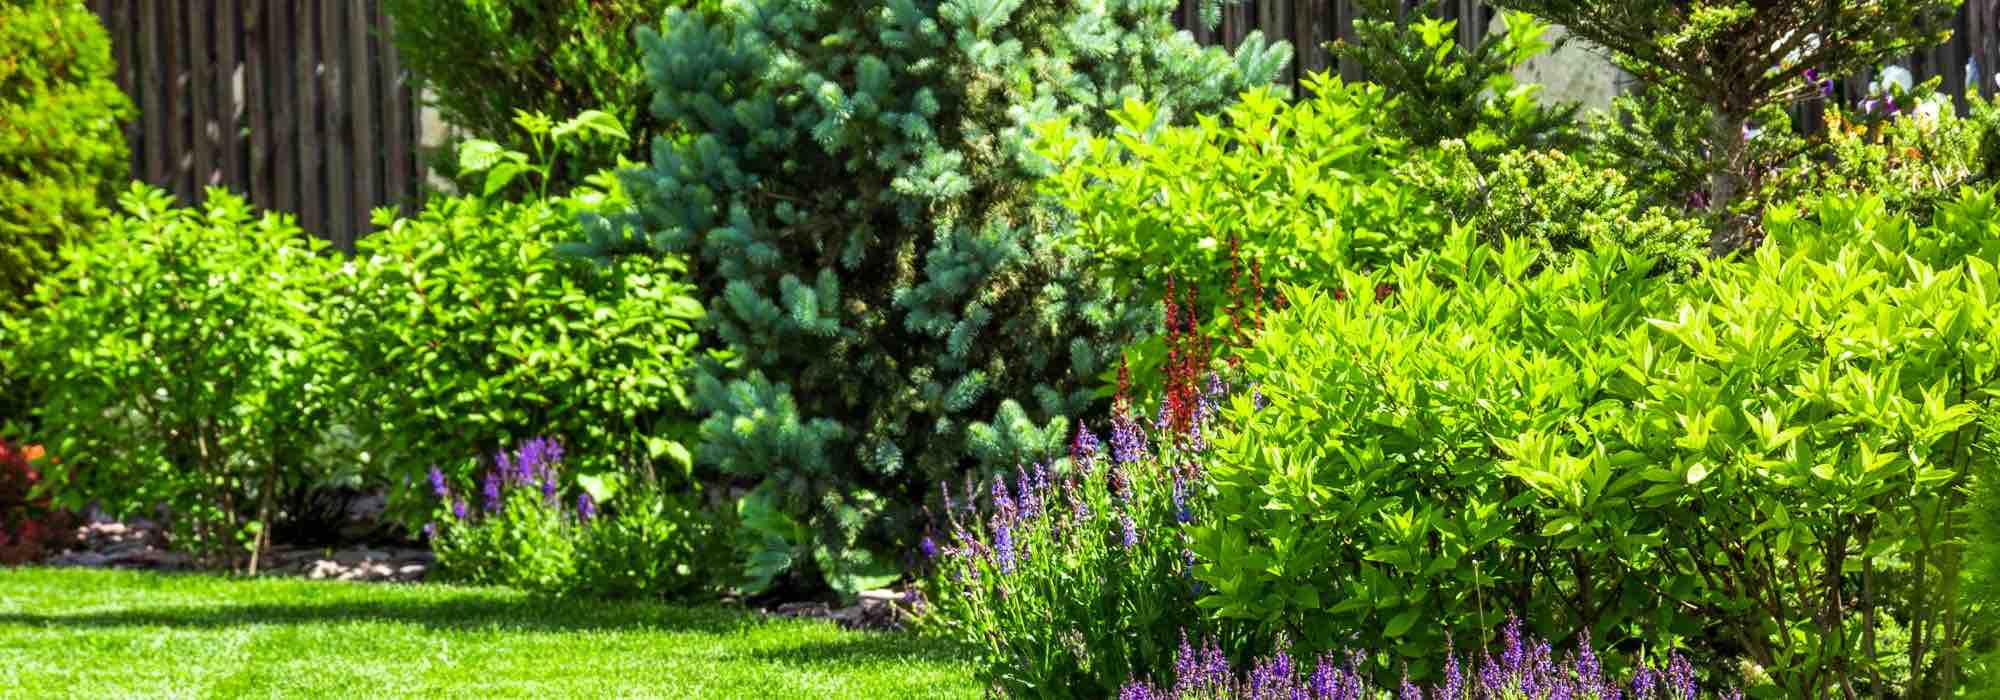 5 conseils pour aménager un jardin en climat venteux